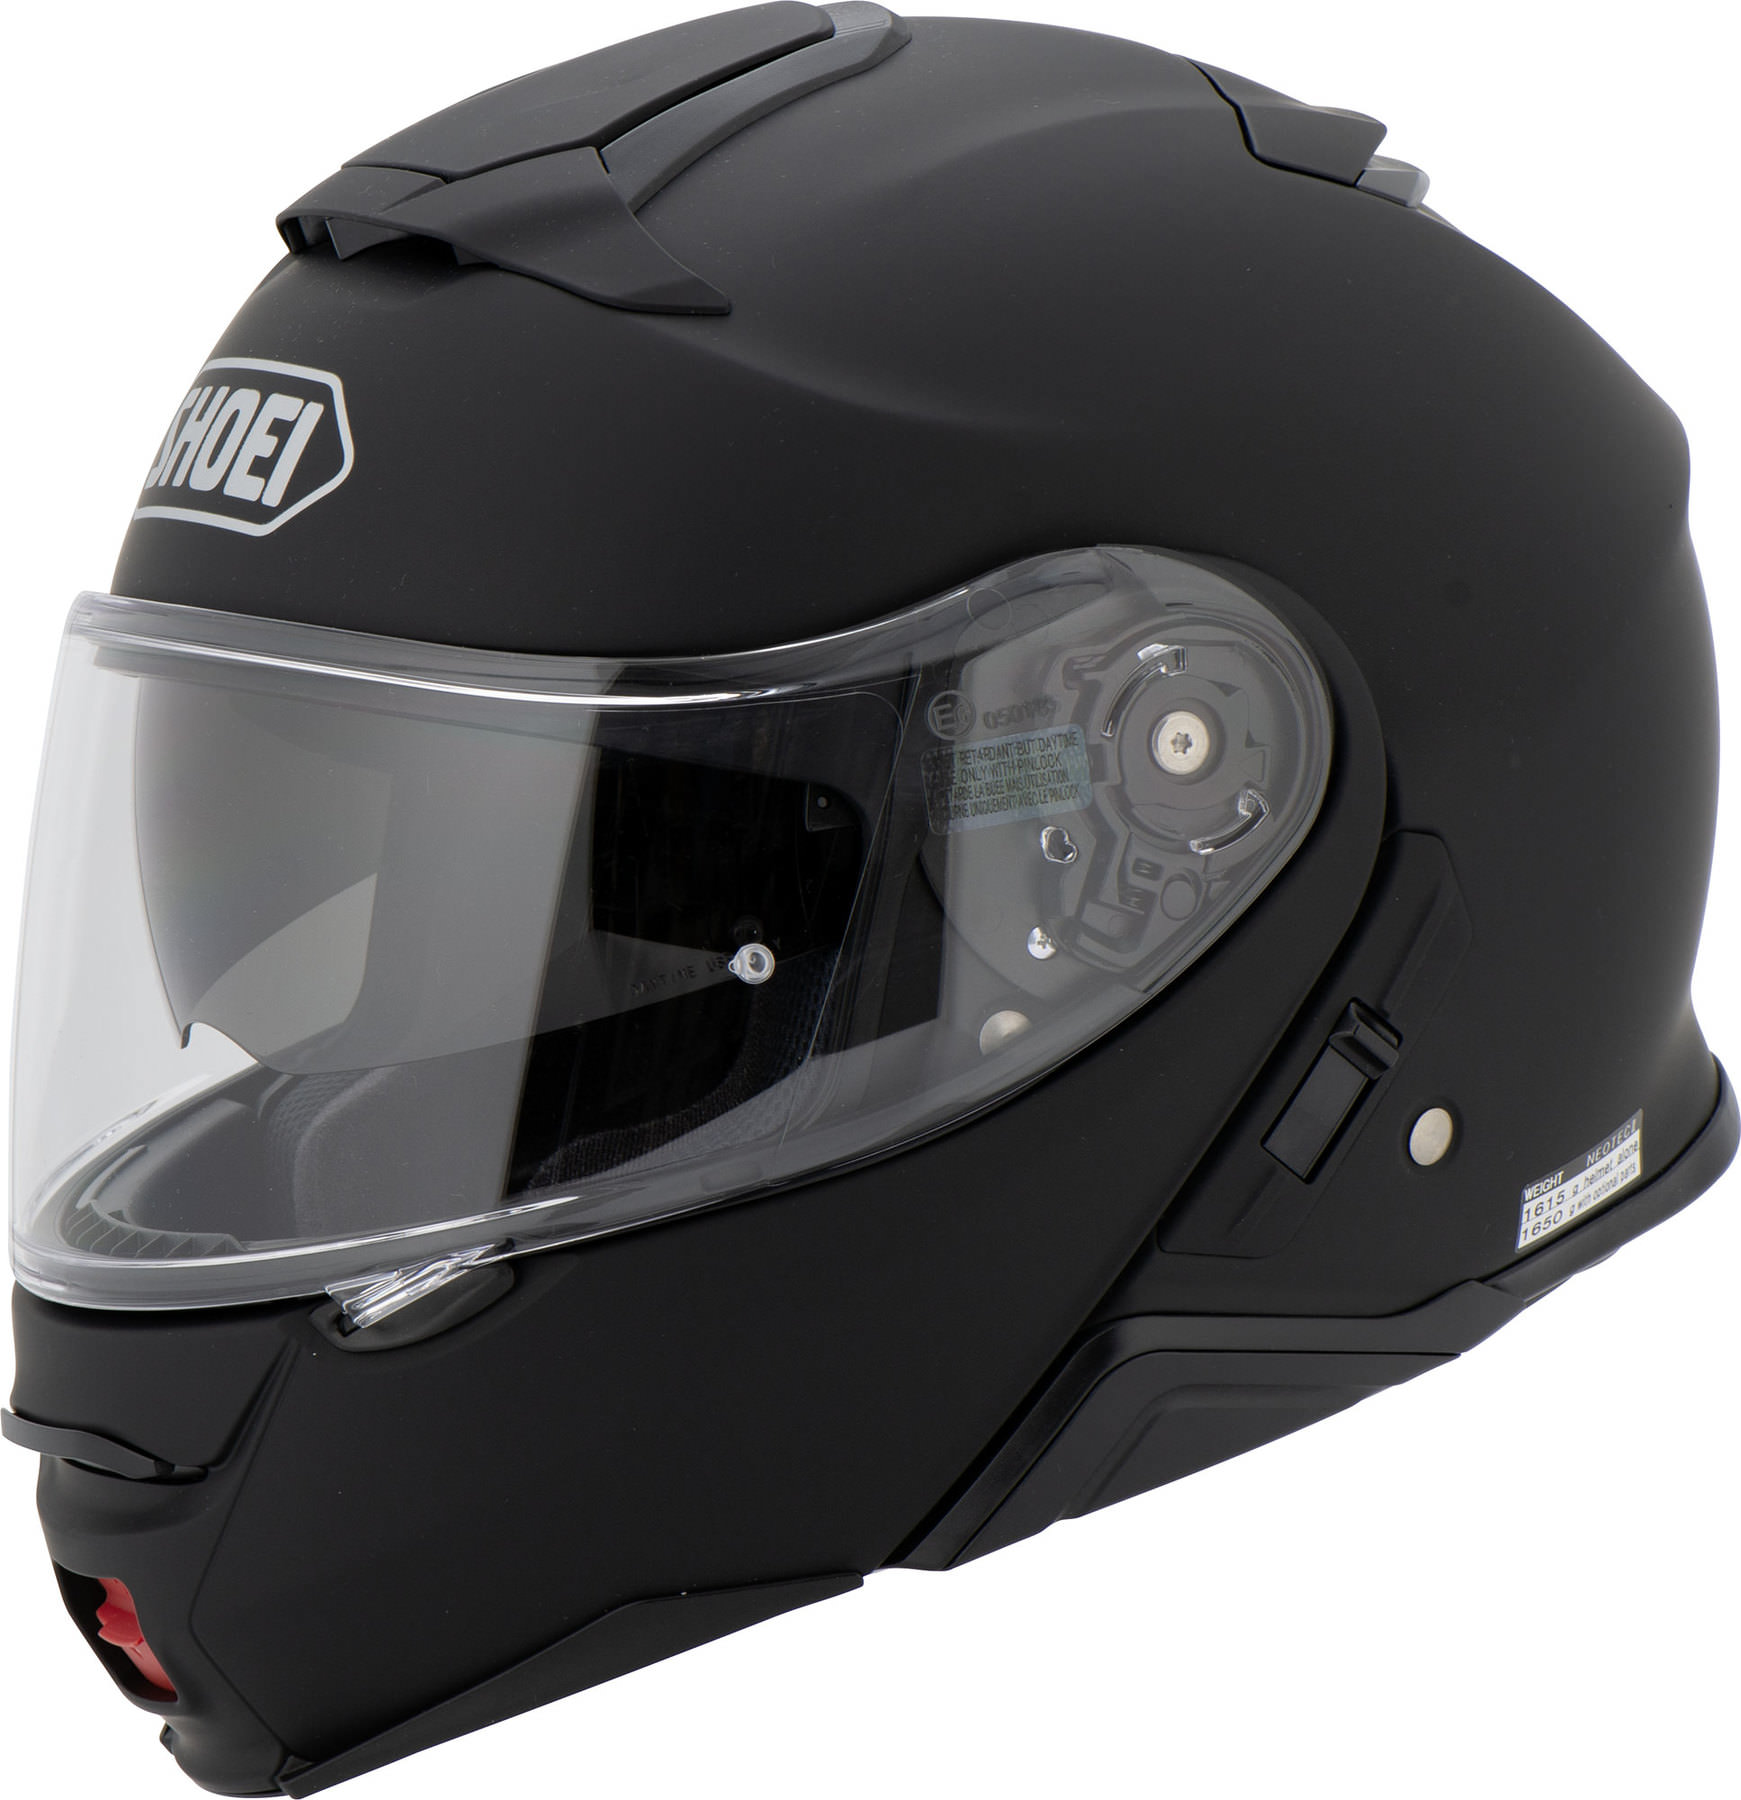 Buy Shoei Neotec II Flip-Up Helmet | Louis motorcycle clothing and